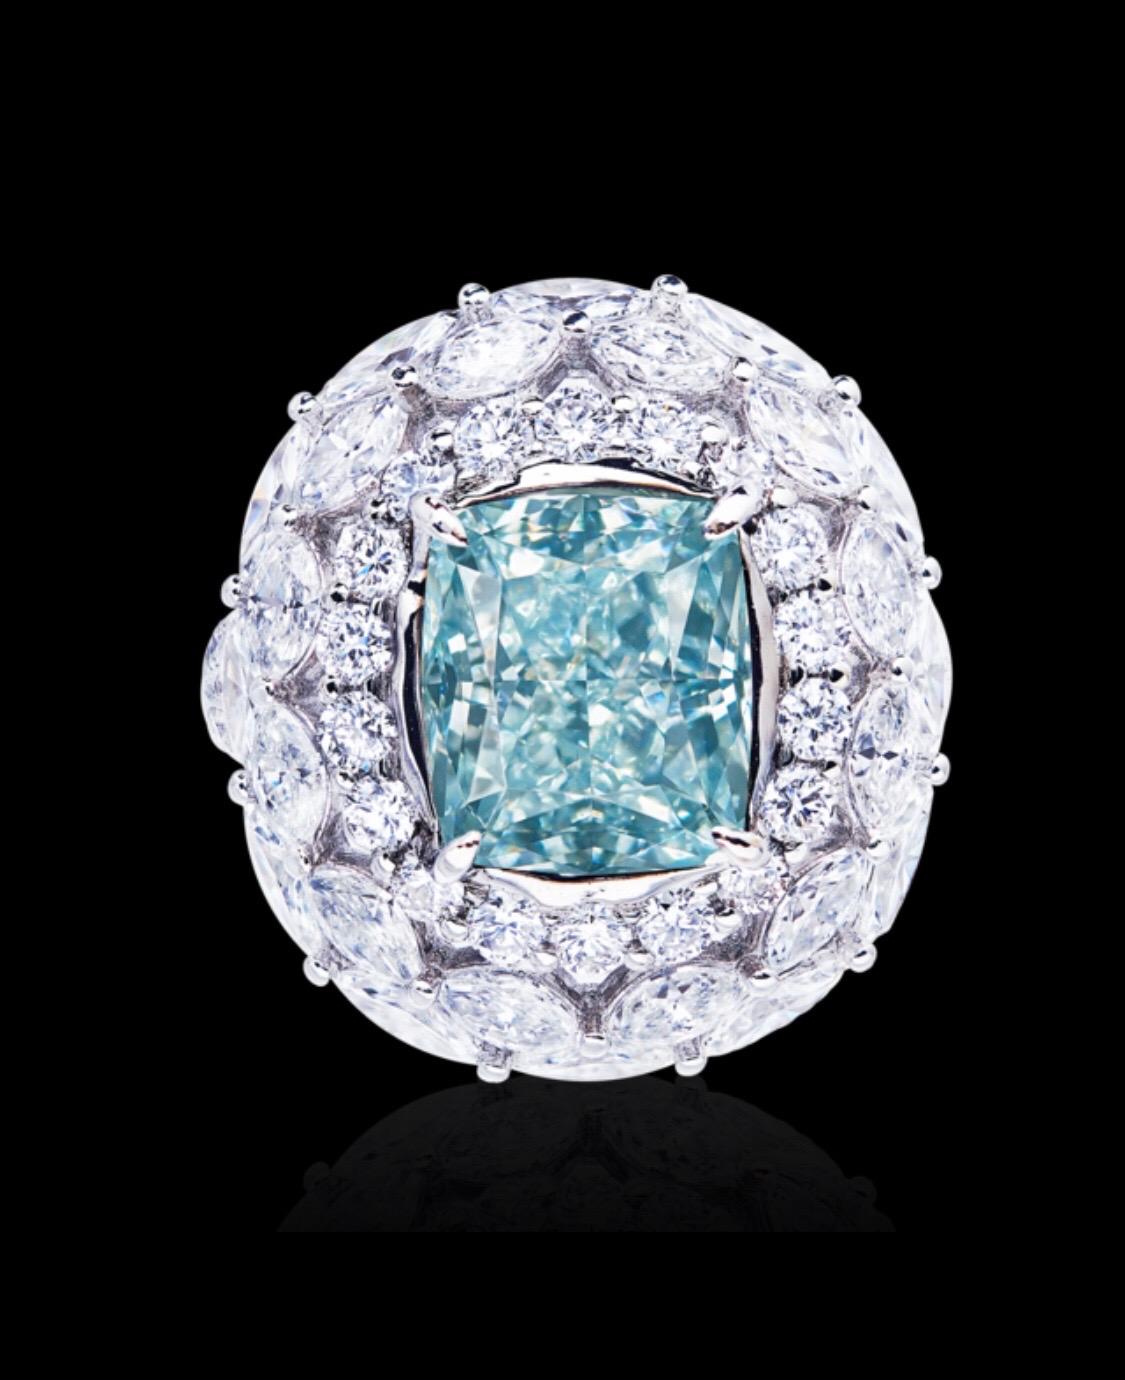 Présentation d'une bague très spéciale de 5 carats de diamant bleu pur certifié par le GIA. Fabriqué à la main dans l'Atelier de Joaillerie Emilio, qui se spécialise dans les pièces de collection rares dans le secteur du Diamant Nature ultra rare de